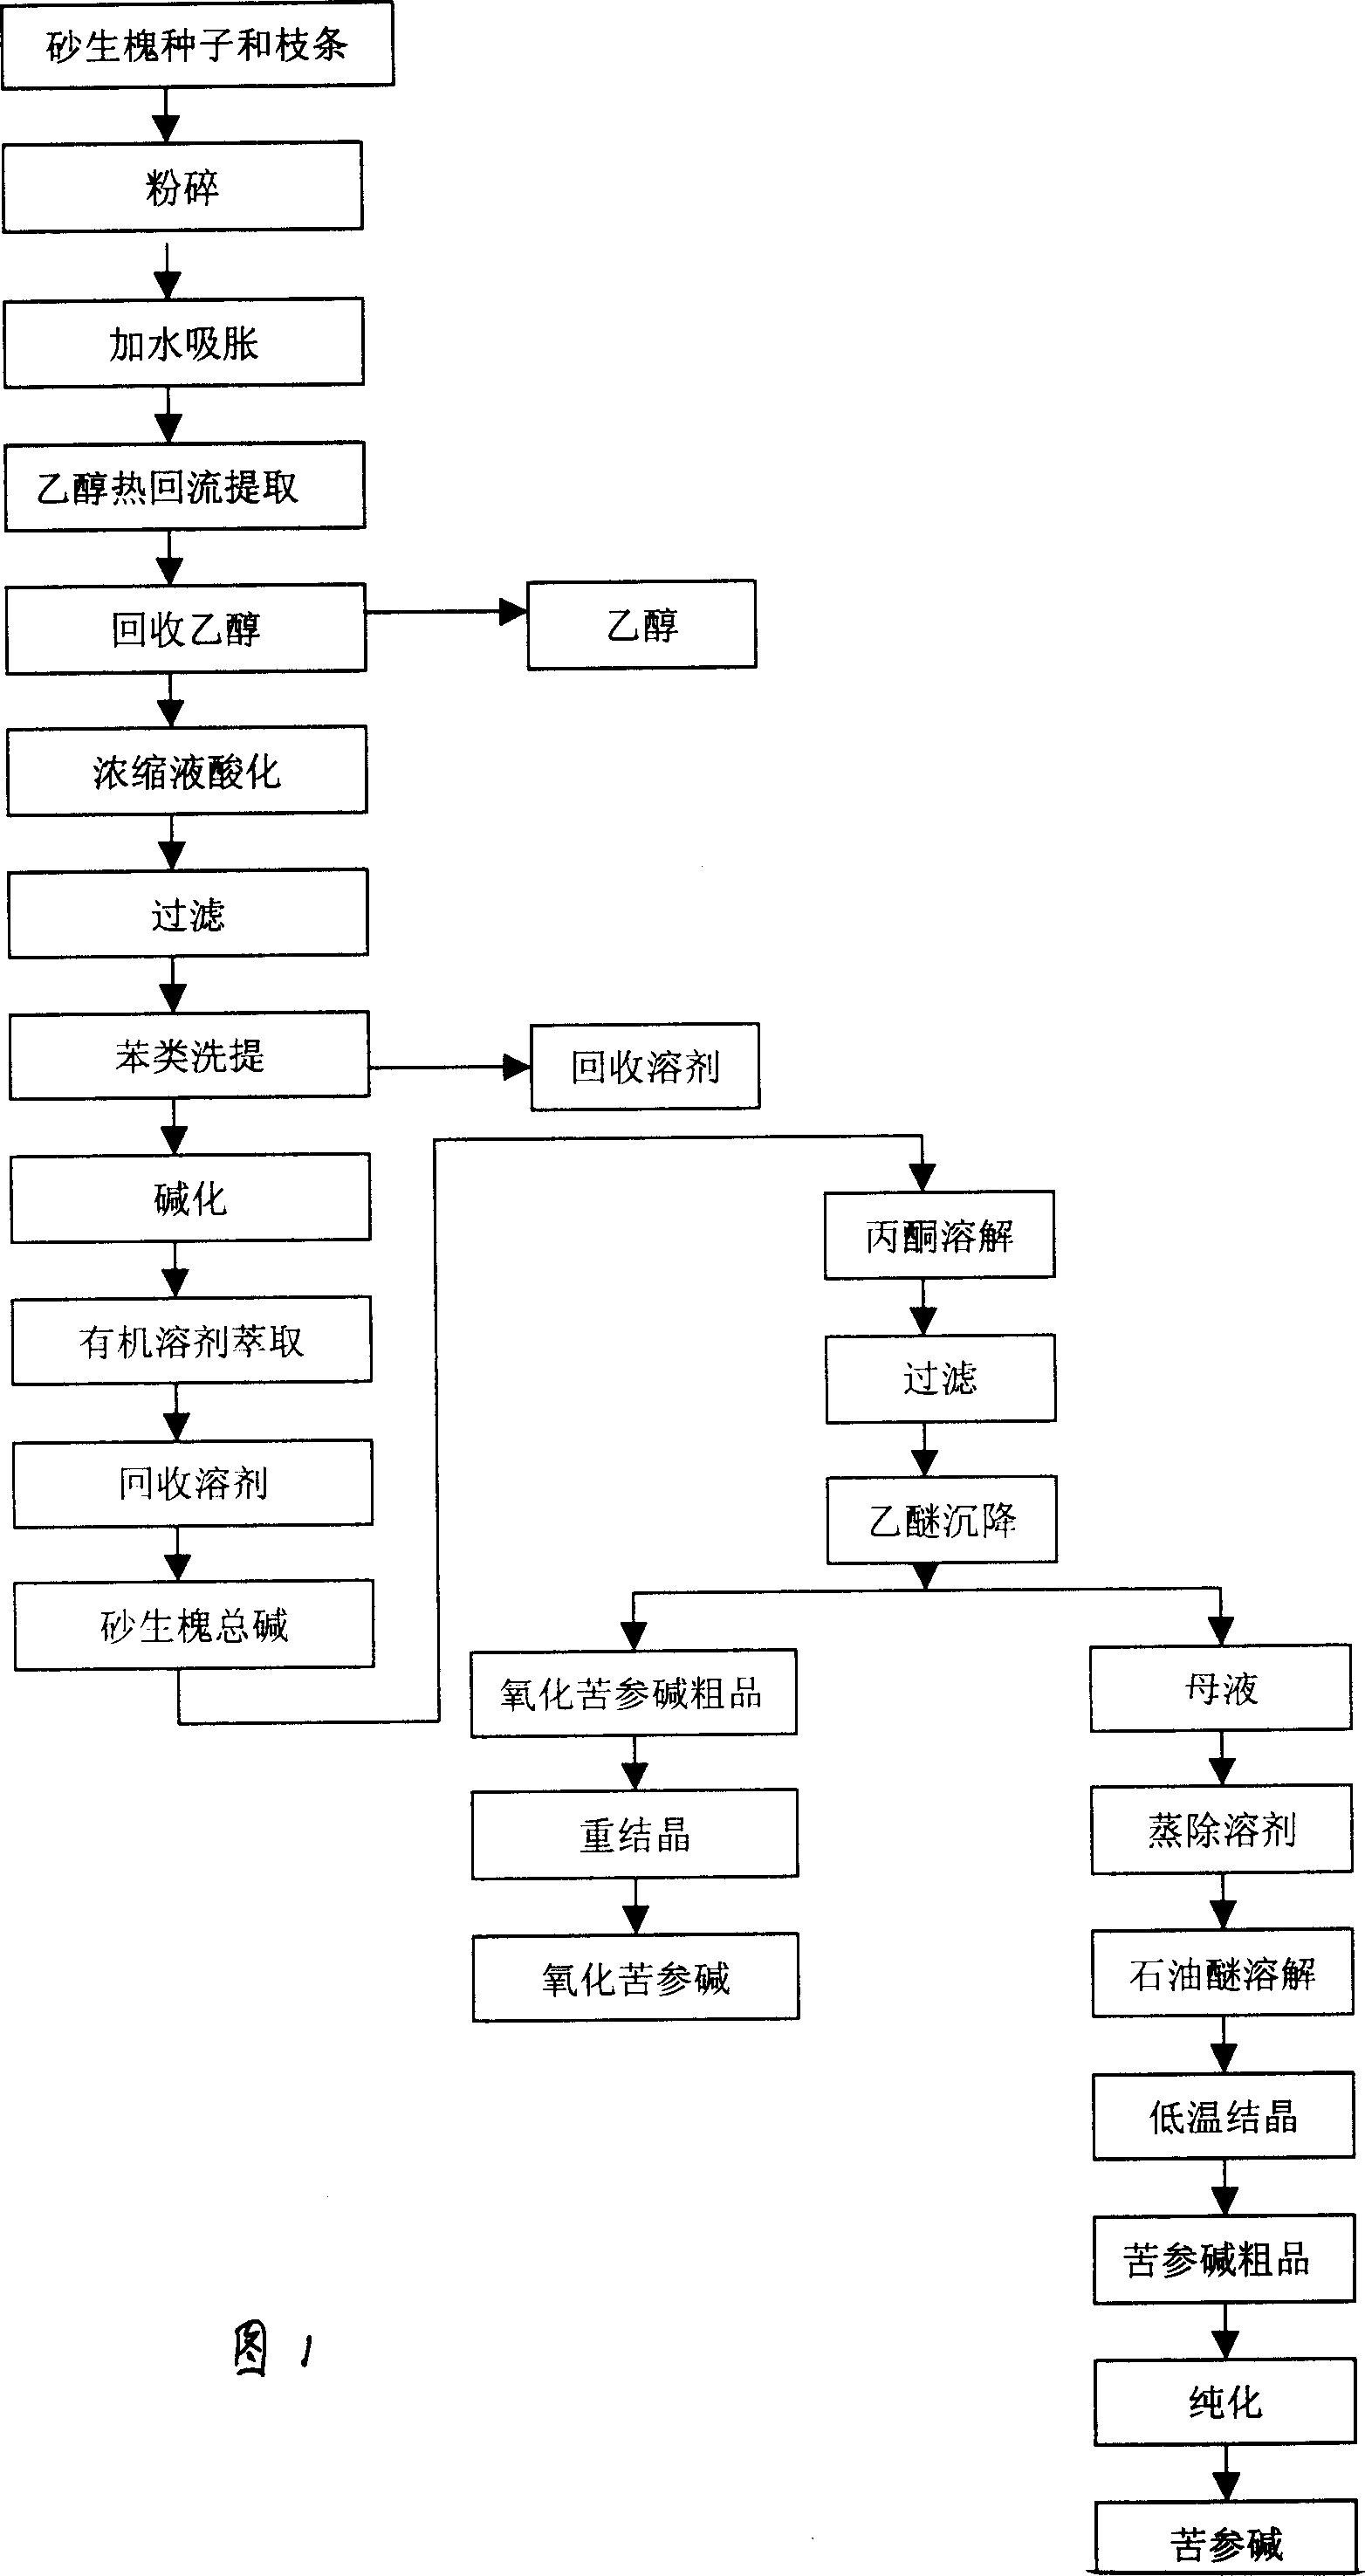 Process for extracting oxymatrine and matrine from sophora moocroftiana